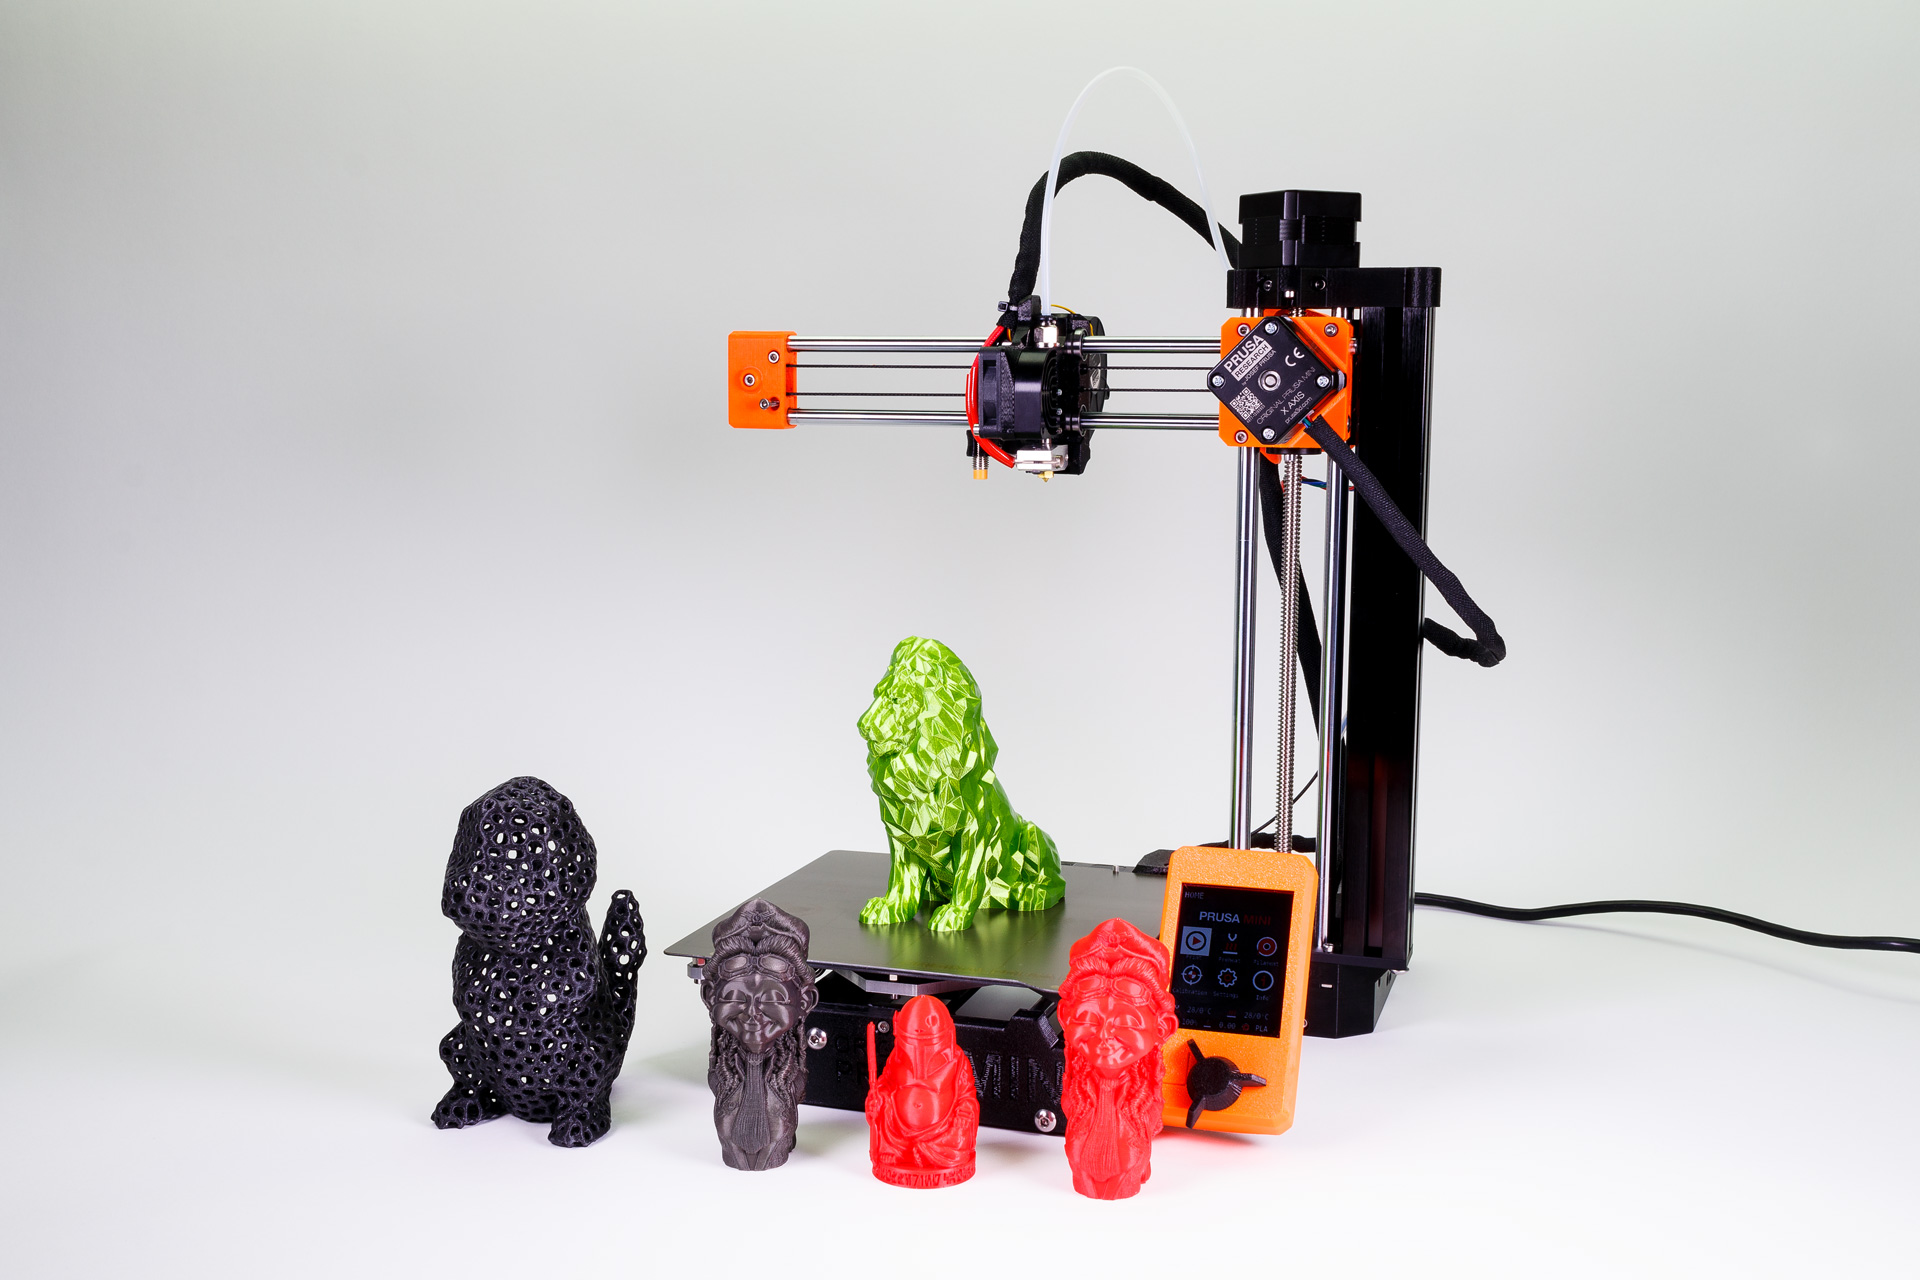 Работа с 3D-принтерами может появиться в школьной программе по технологии к 2017 г.